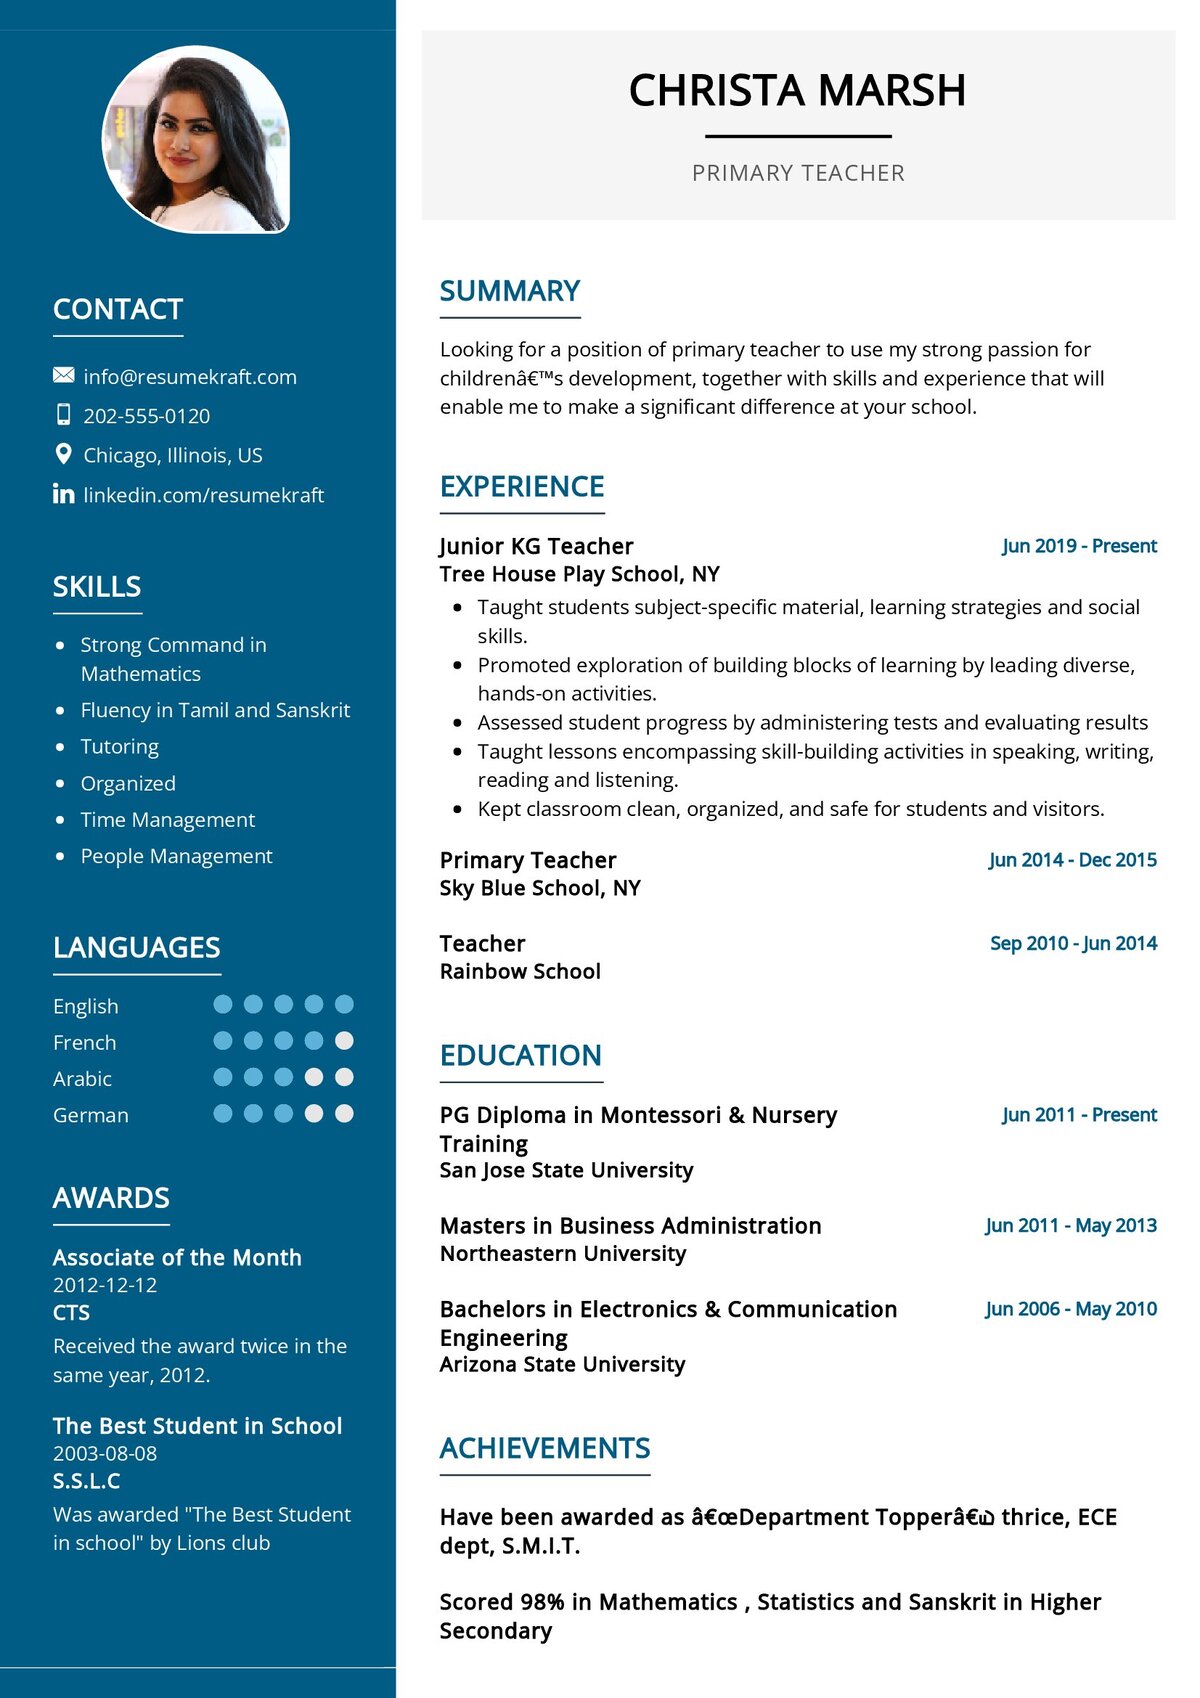 resume format for indian teacher